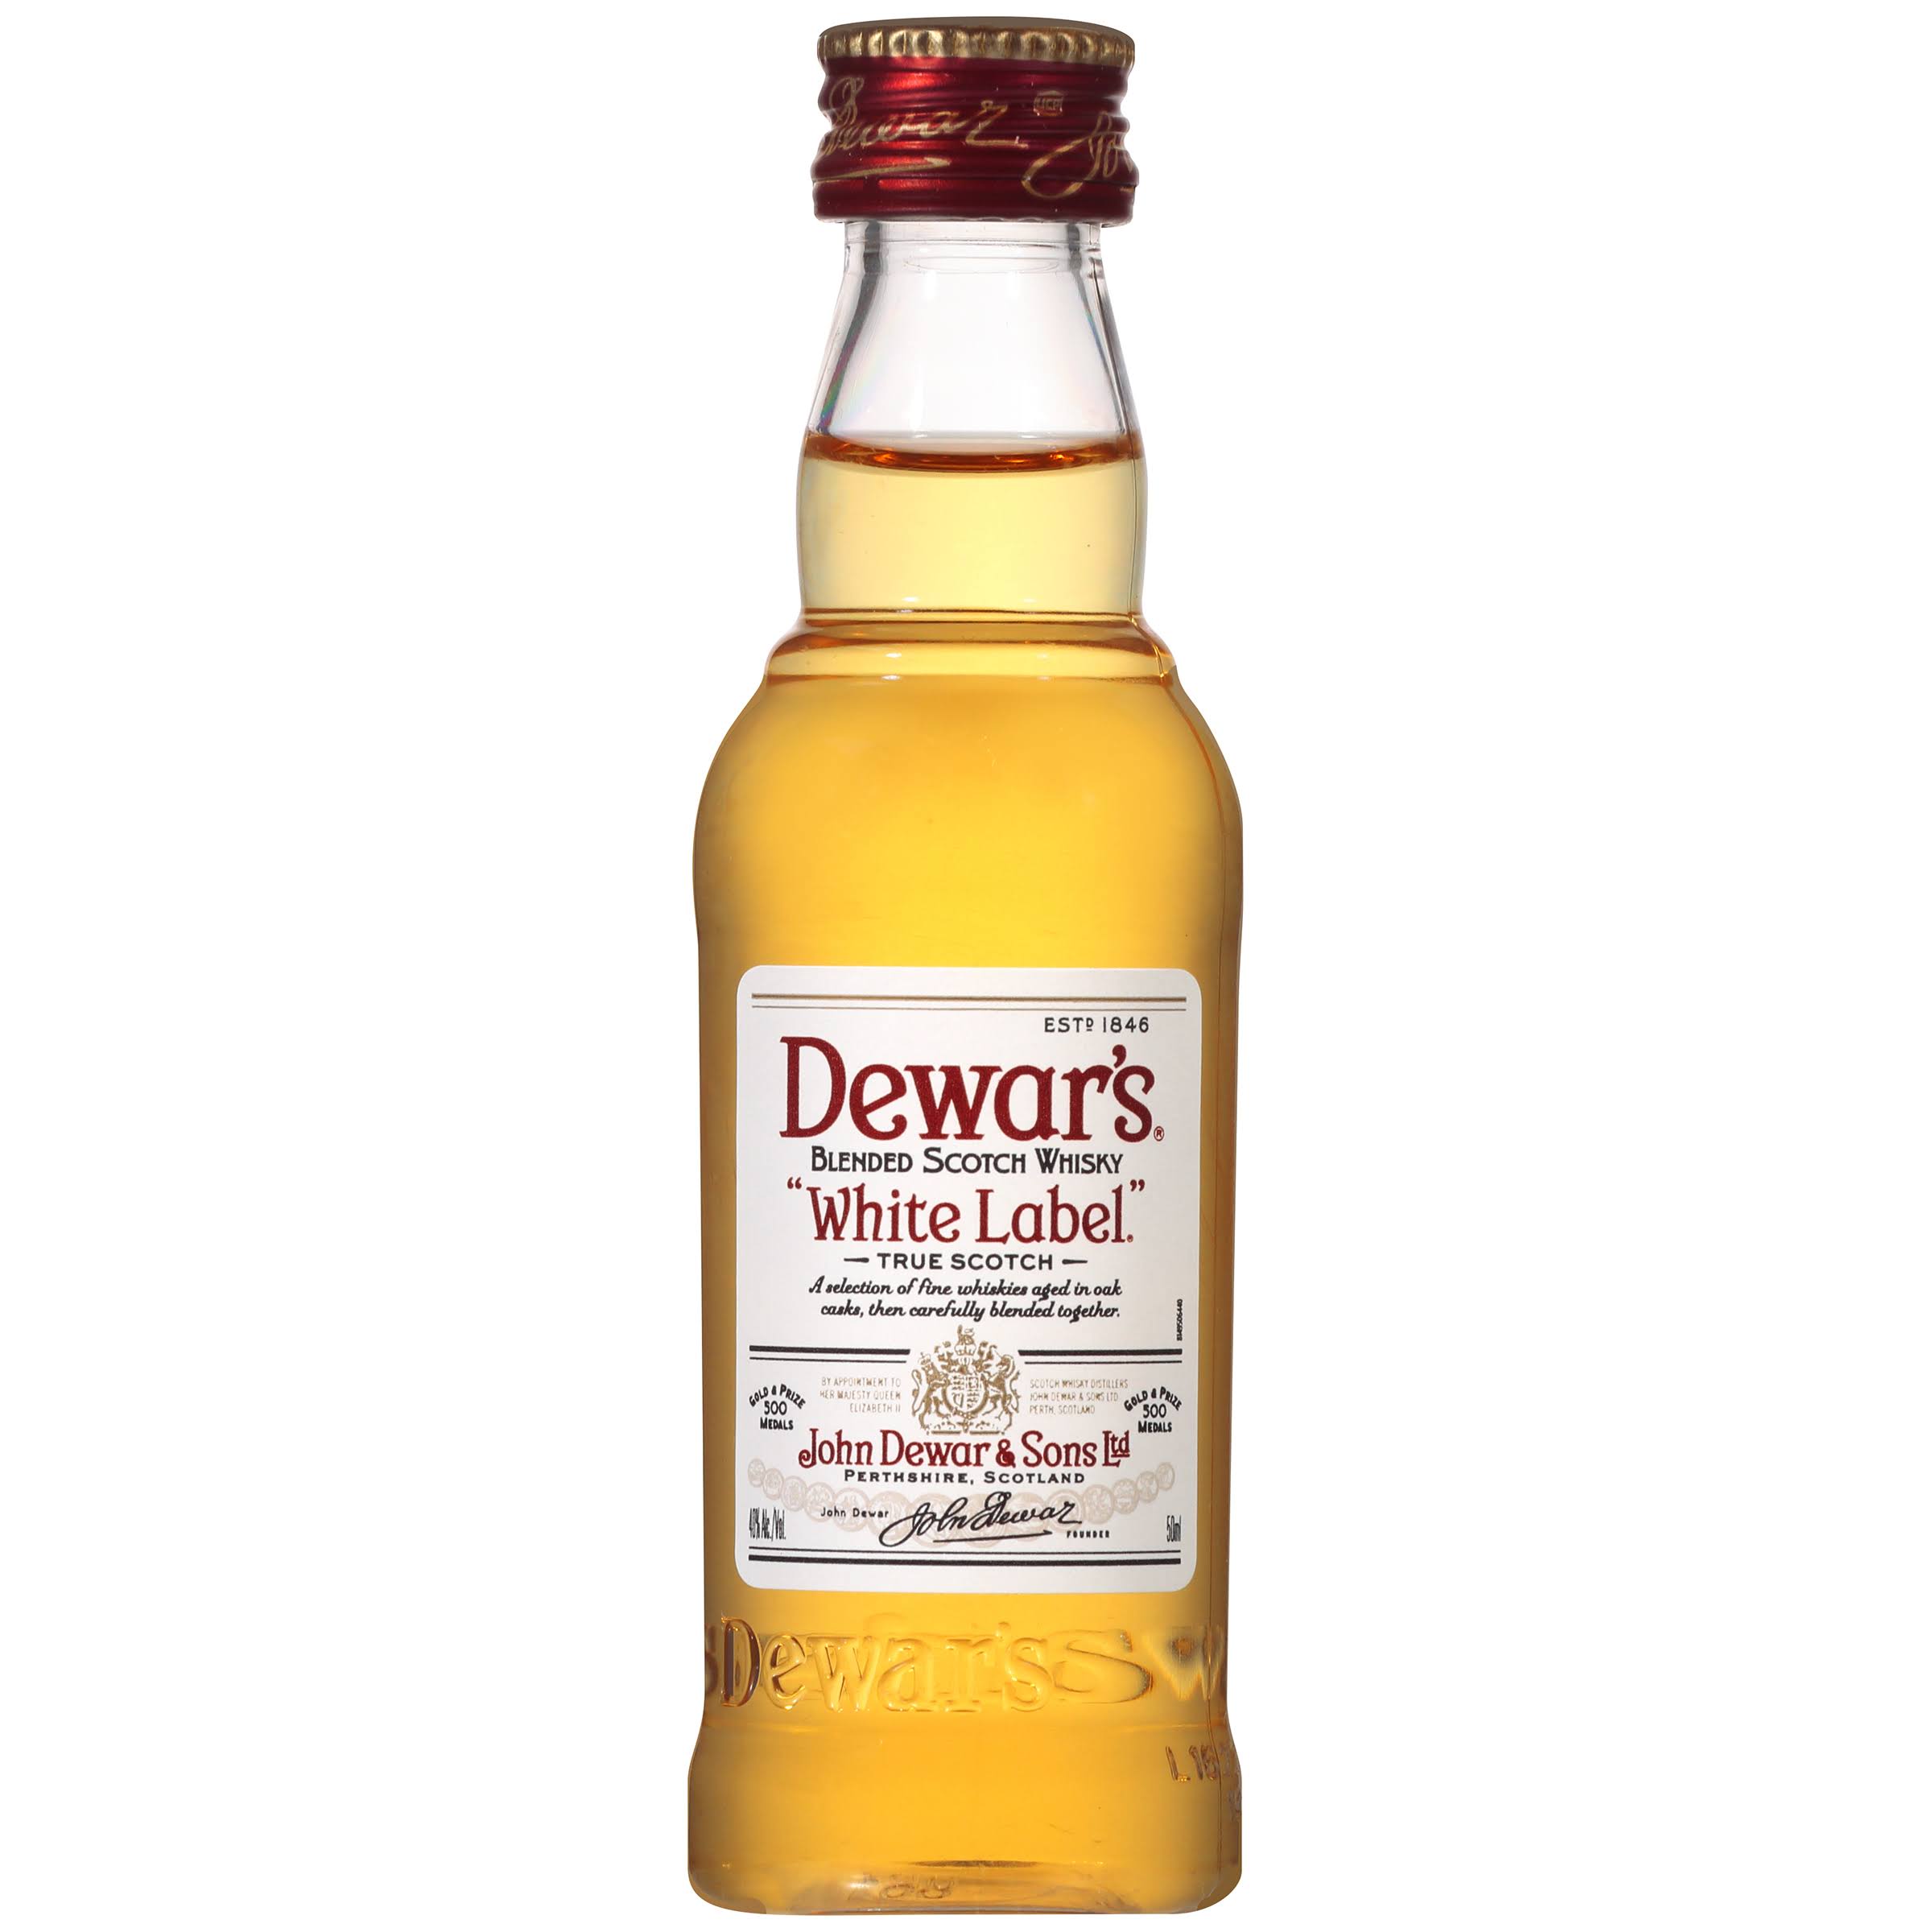 Dewar's White Label Scotch - 50 ml bottle